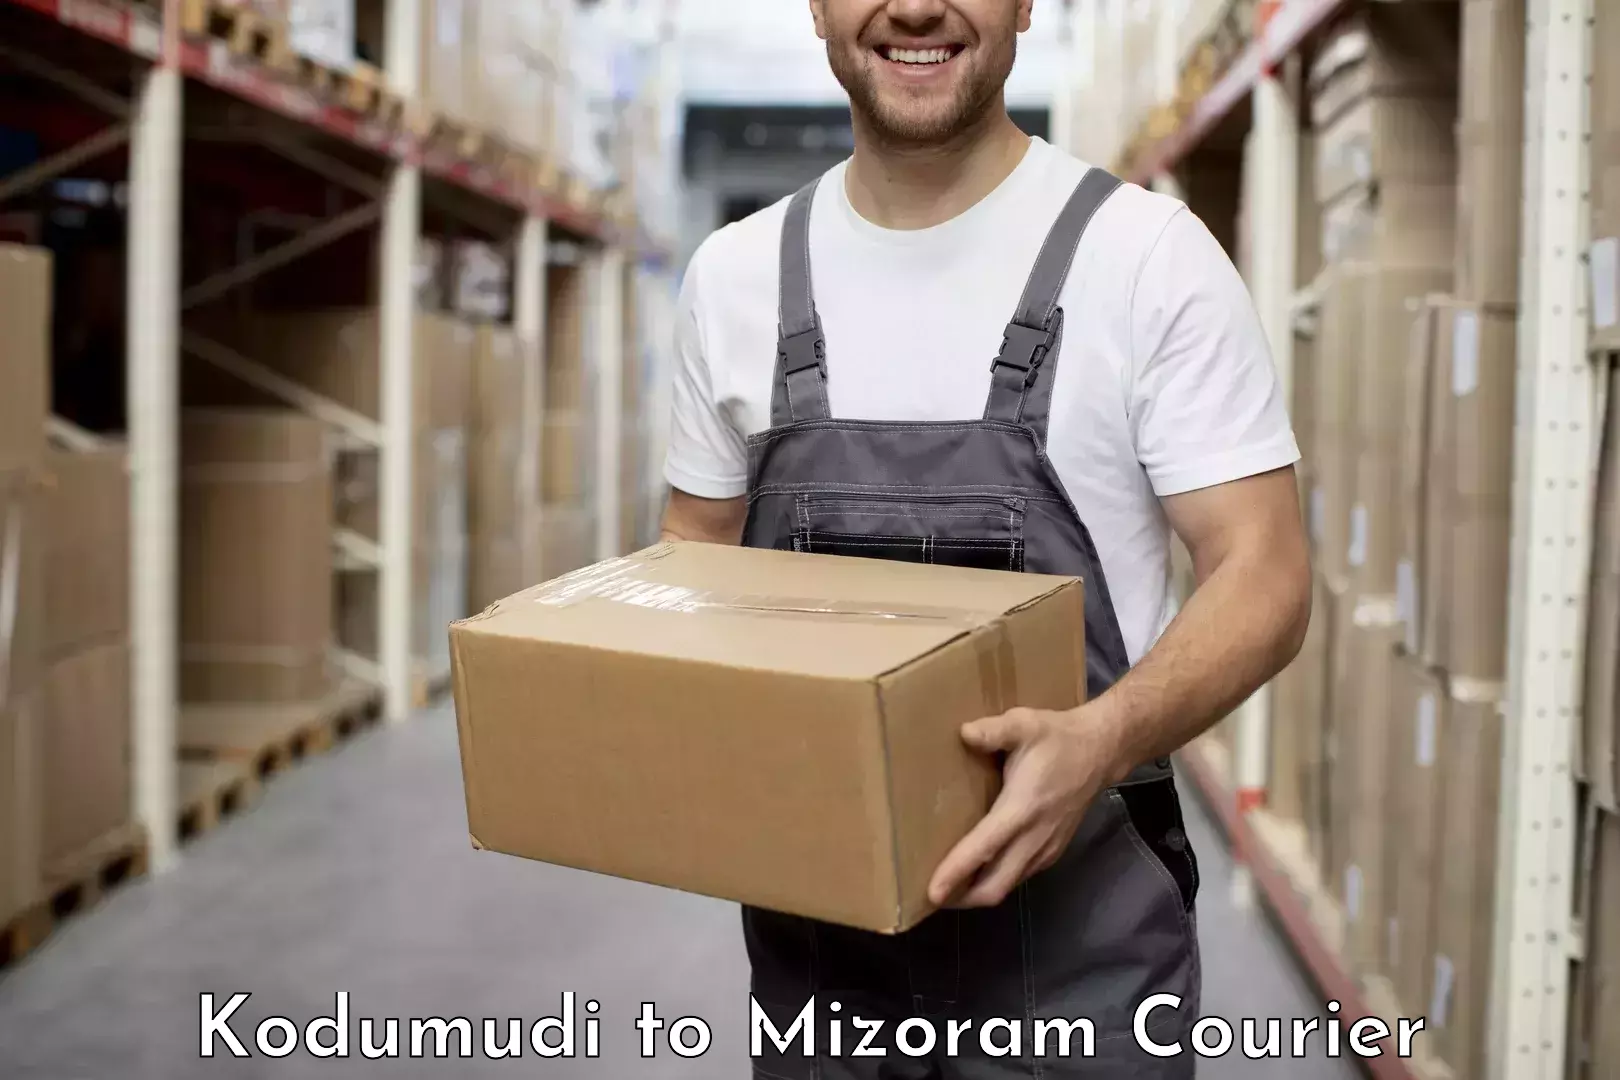 Express package handling Kodumudi to Mizoram